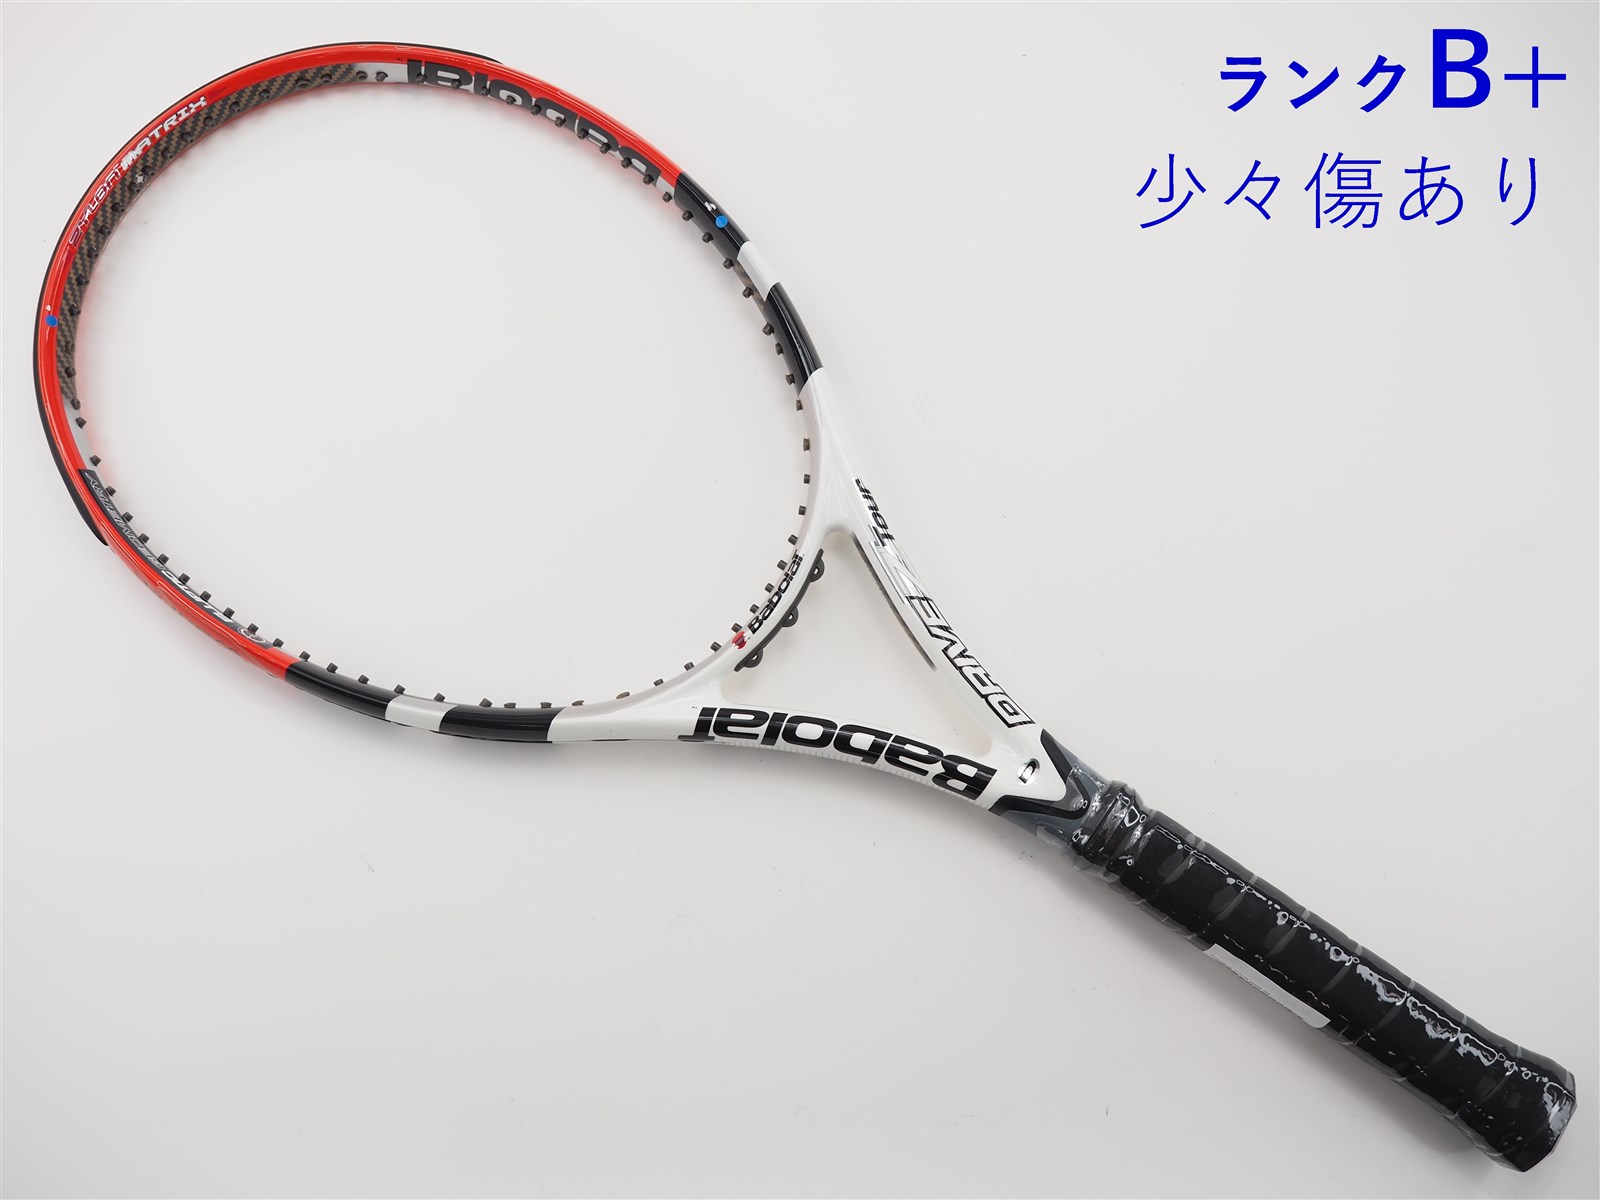 テニスラケット バボラ ドライブ ゼット ツアー 2011年モデル (G2